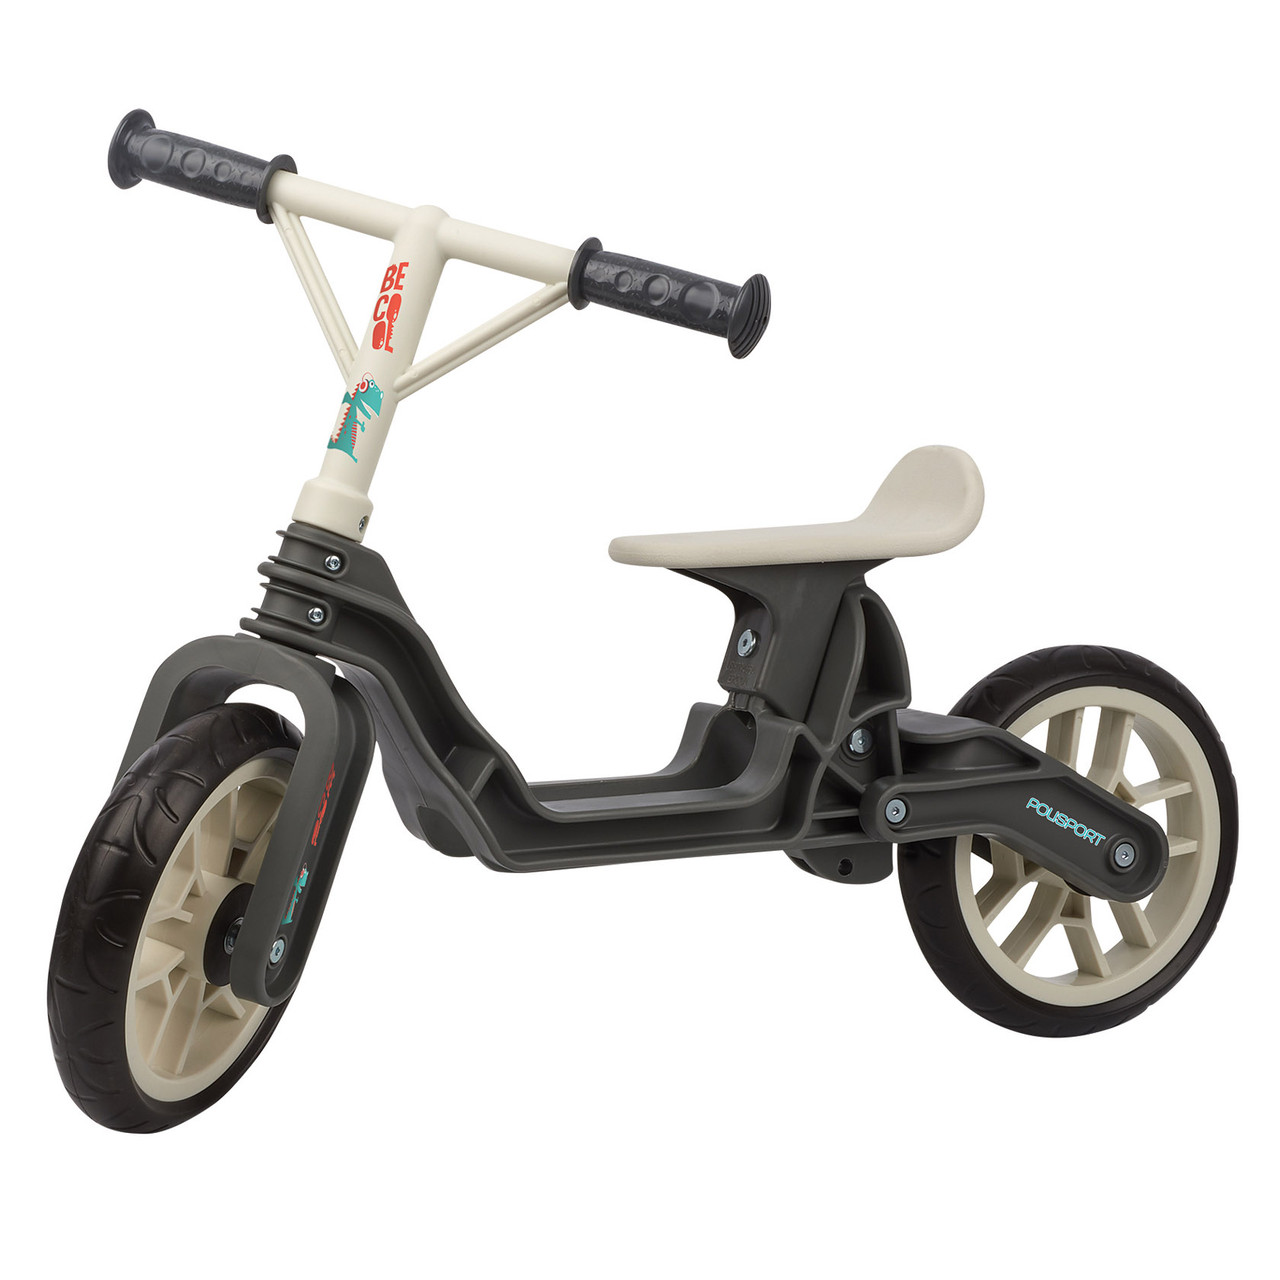 Біговел POLISPORT Balance Bike термопластиковий вік 2-5 років до 25 кг cірий/кремовий